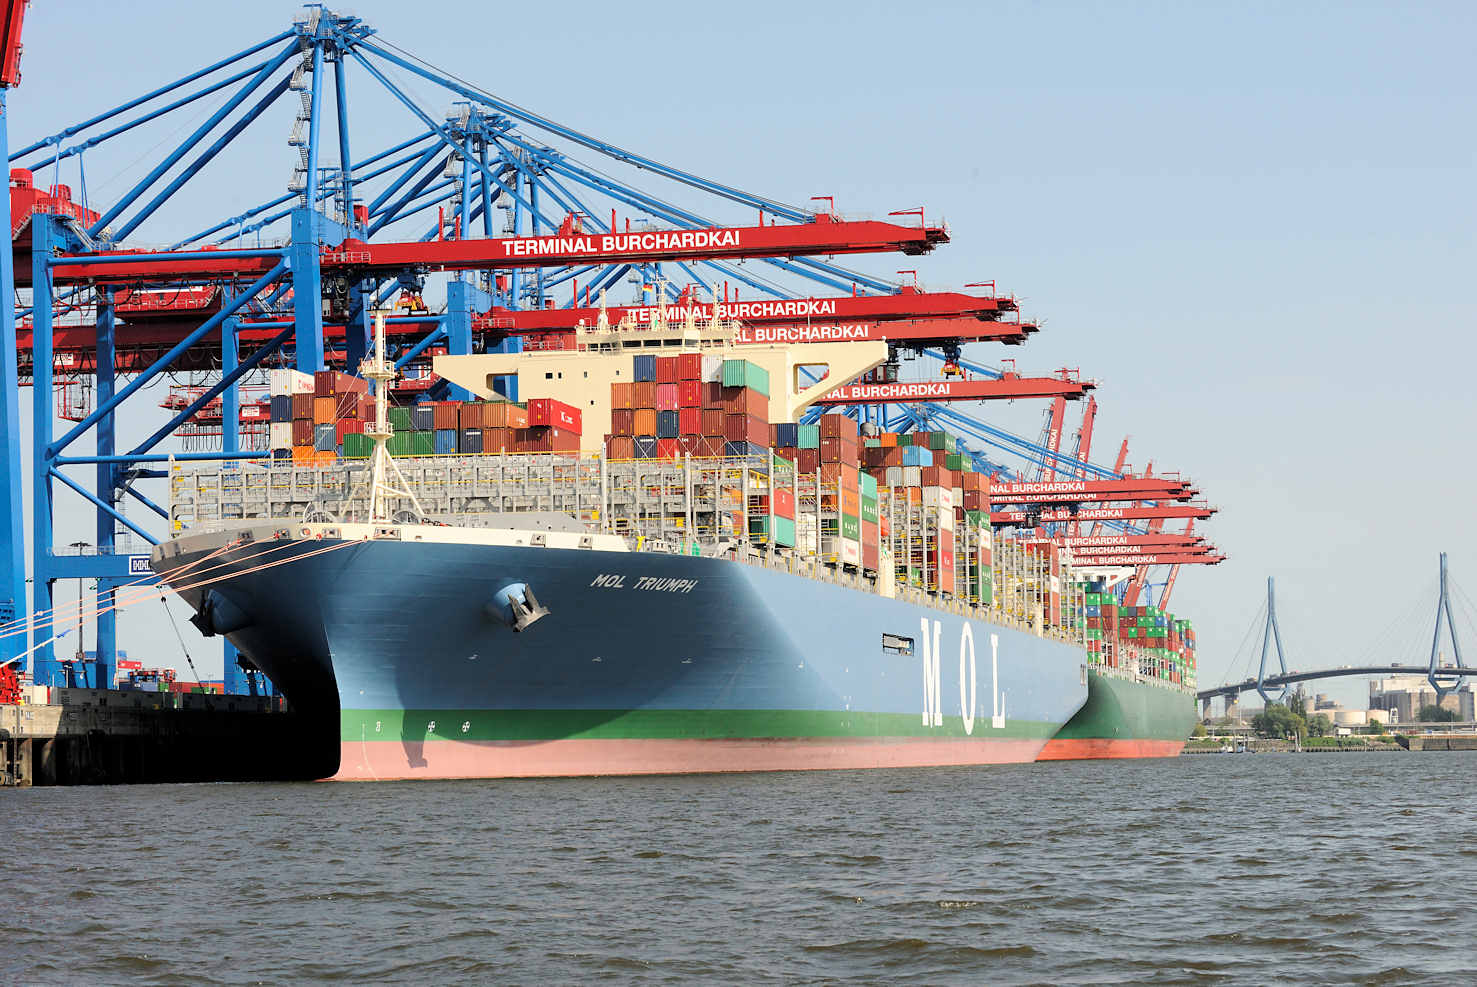 0367 Das Containerschiff MOL TRIUMPH liegt im Hafen Hamburgs. | Container Terminal Burchardkai CTB